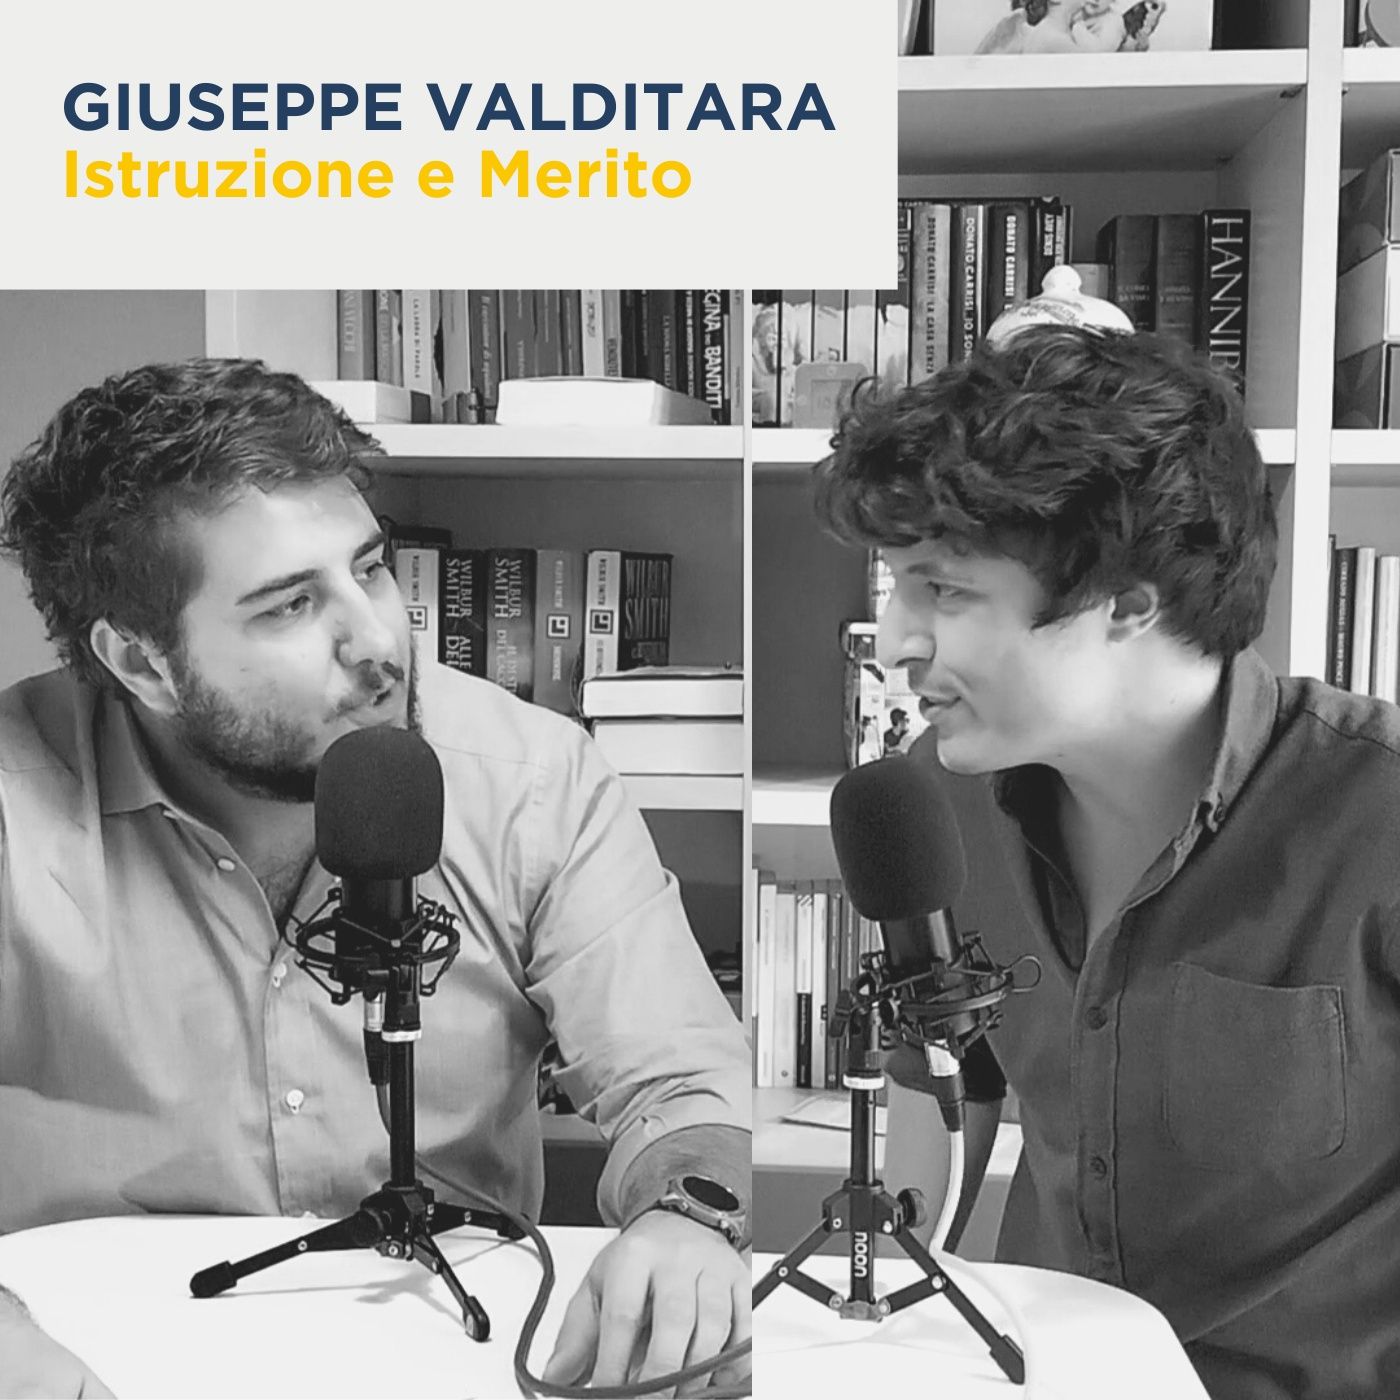 Giuseppe Valditara - Istruzione e merito (Ministri)